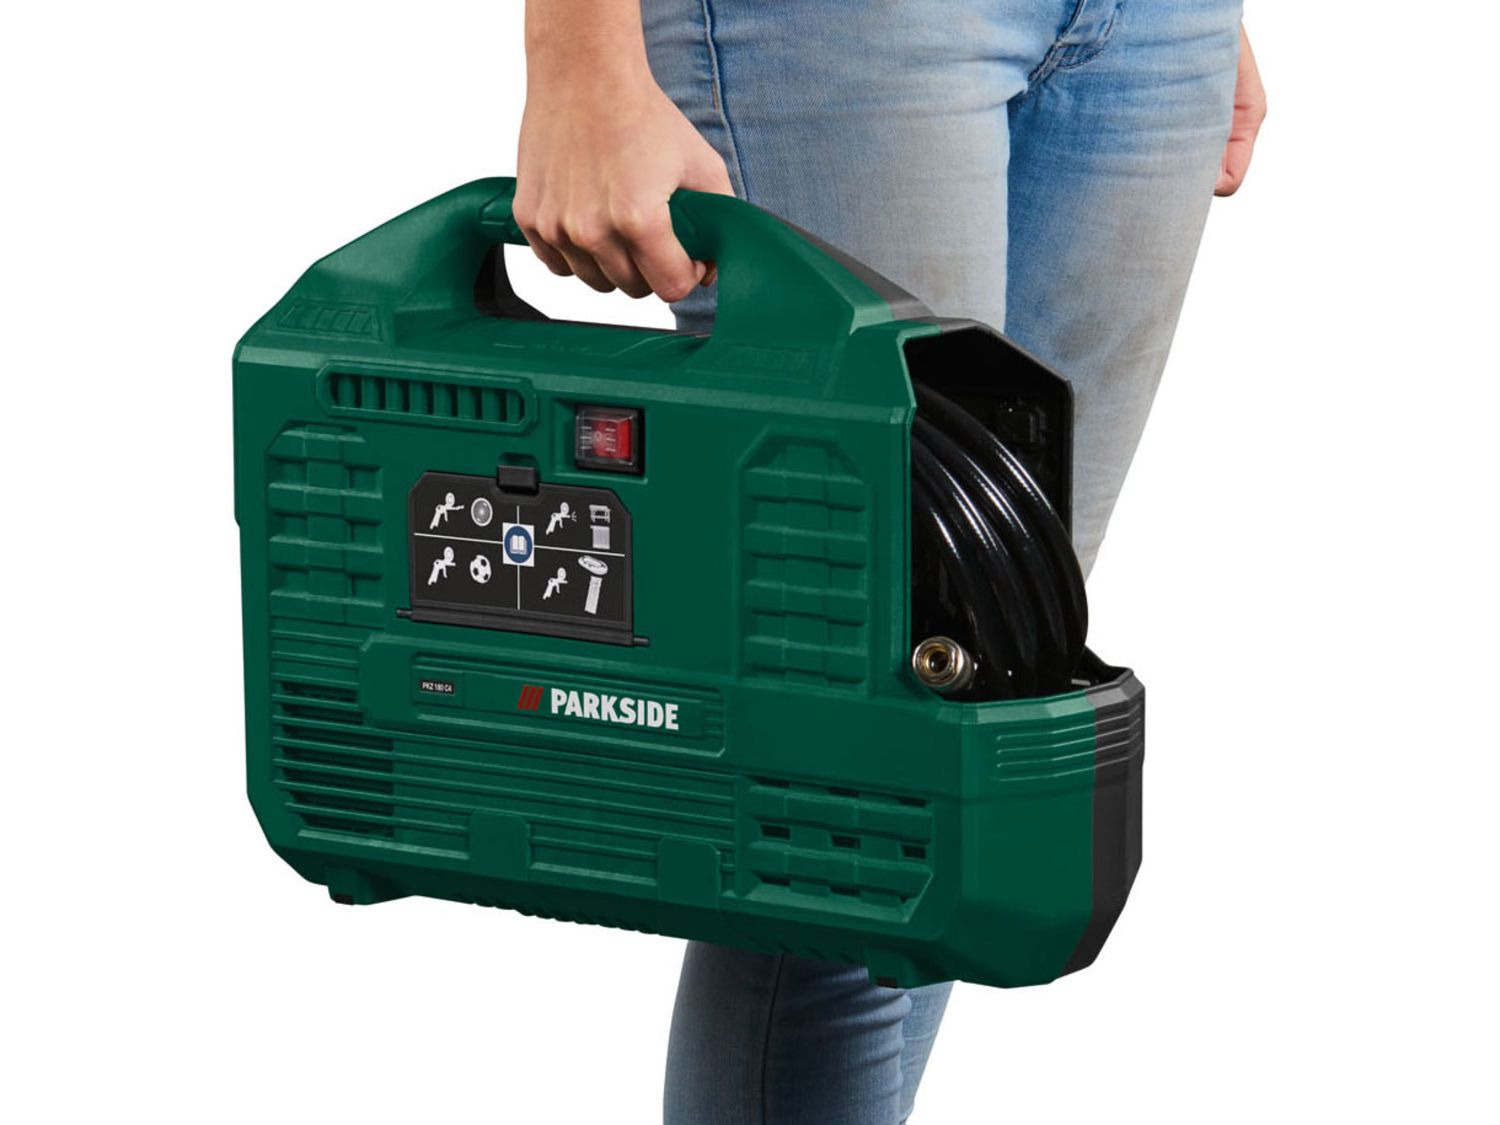 Parkside ® compresseur PKZ 180 c5 pompe à air 8 bar pompe 1100 W AIR